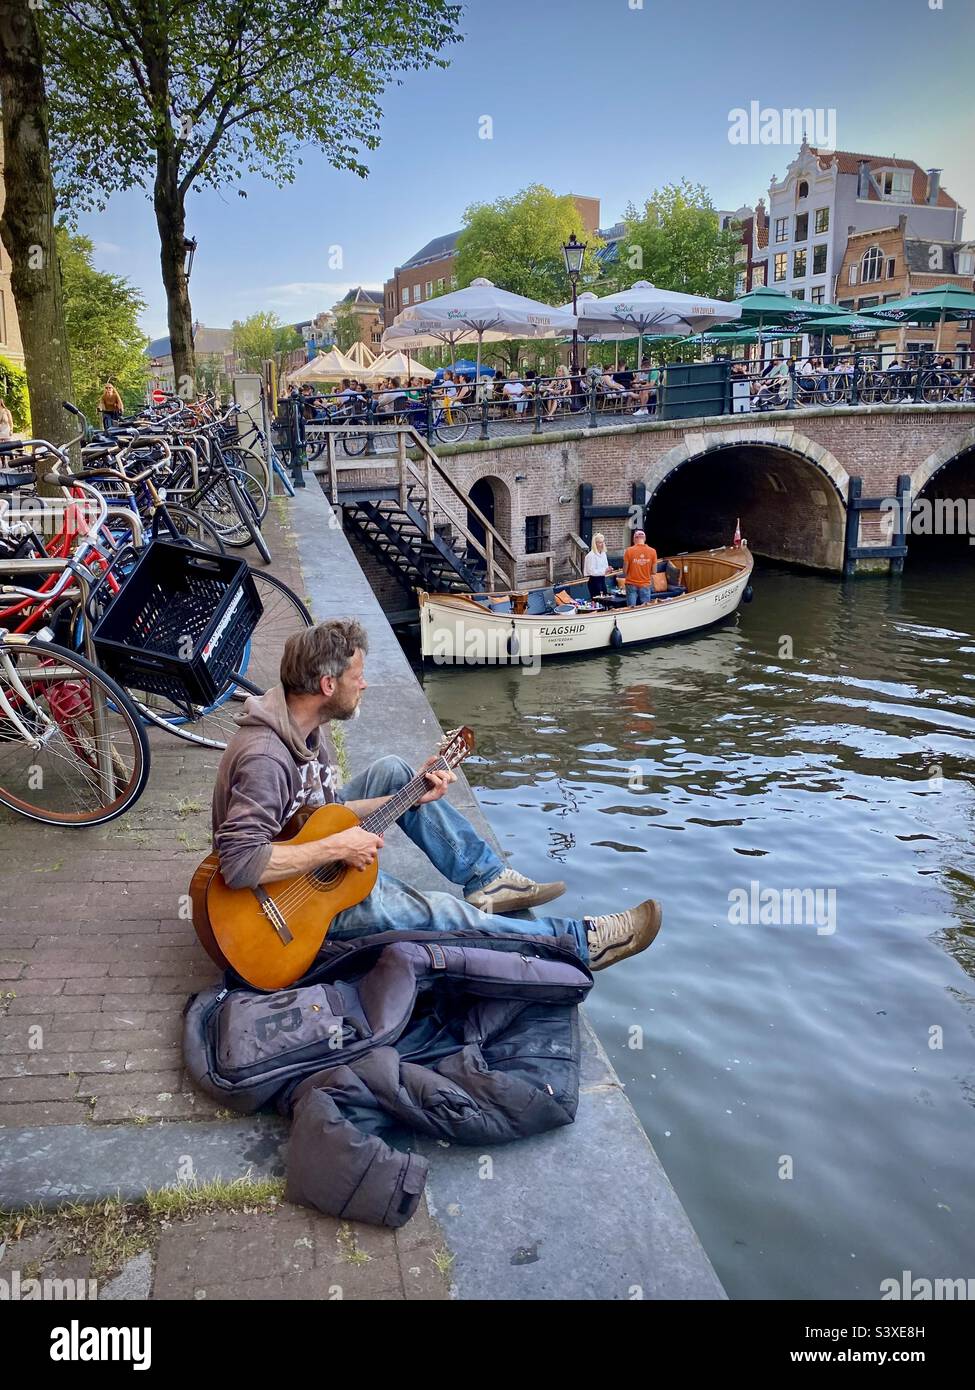 Un busseur joue sa guitare assis près d'un canal lors d'une belle soirée d'été pendant l'heure d'or au cœur d'Amsterdam Banque D'Images